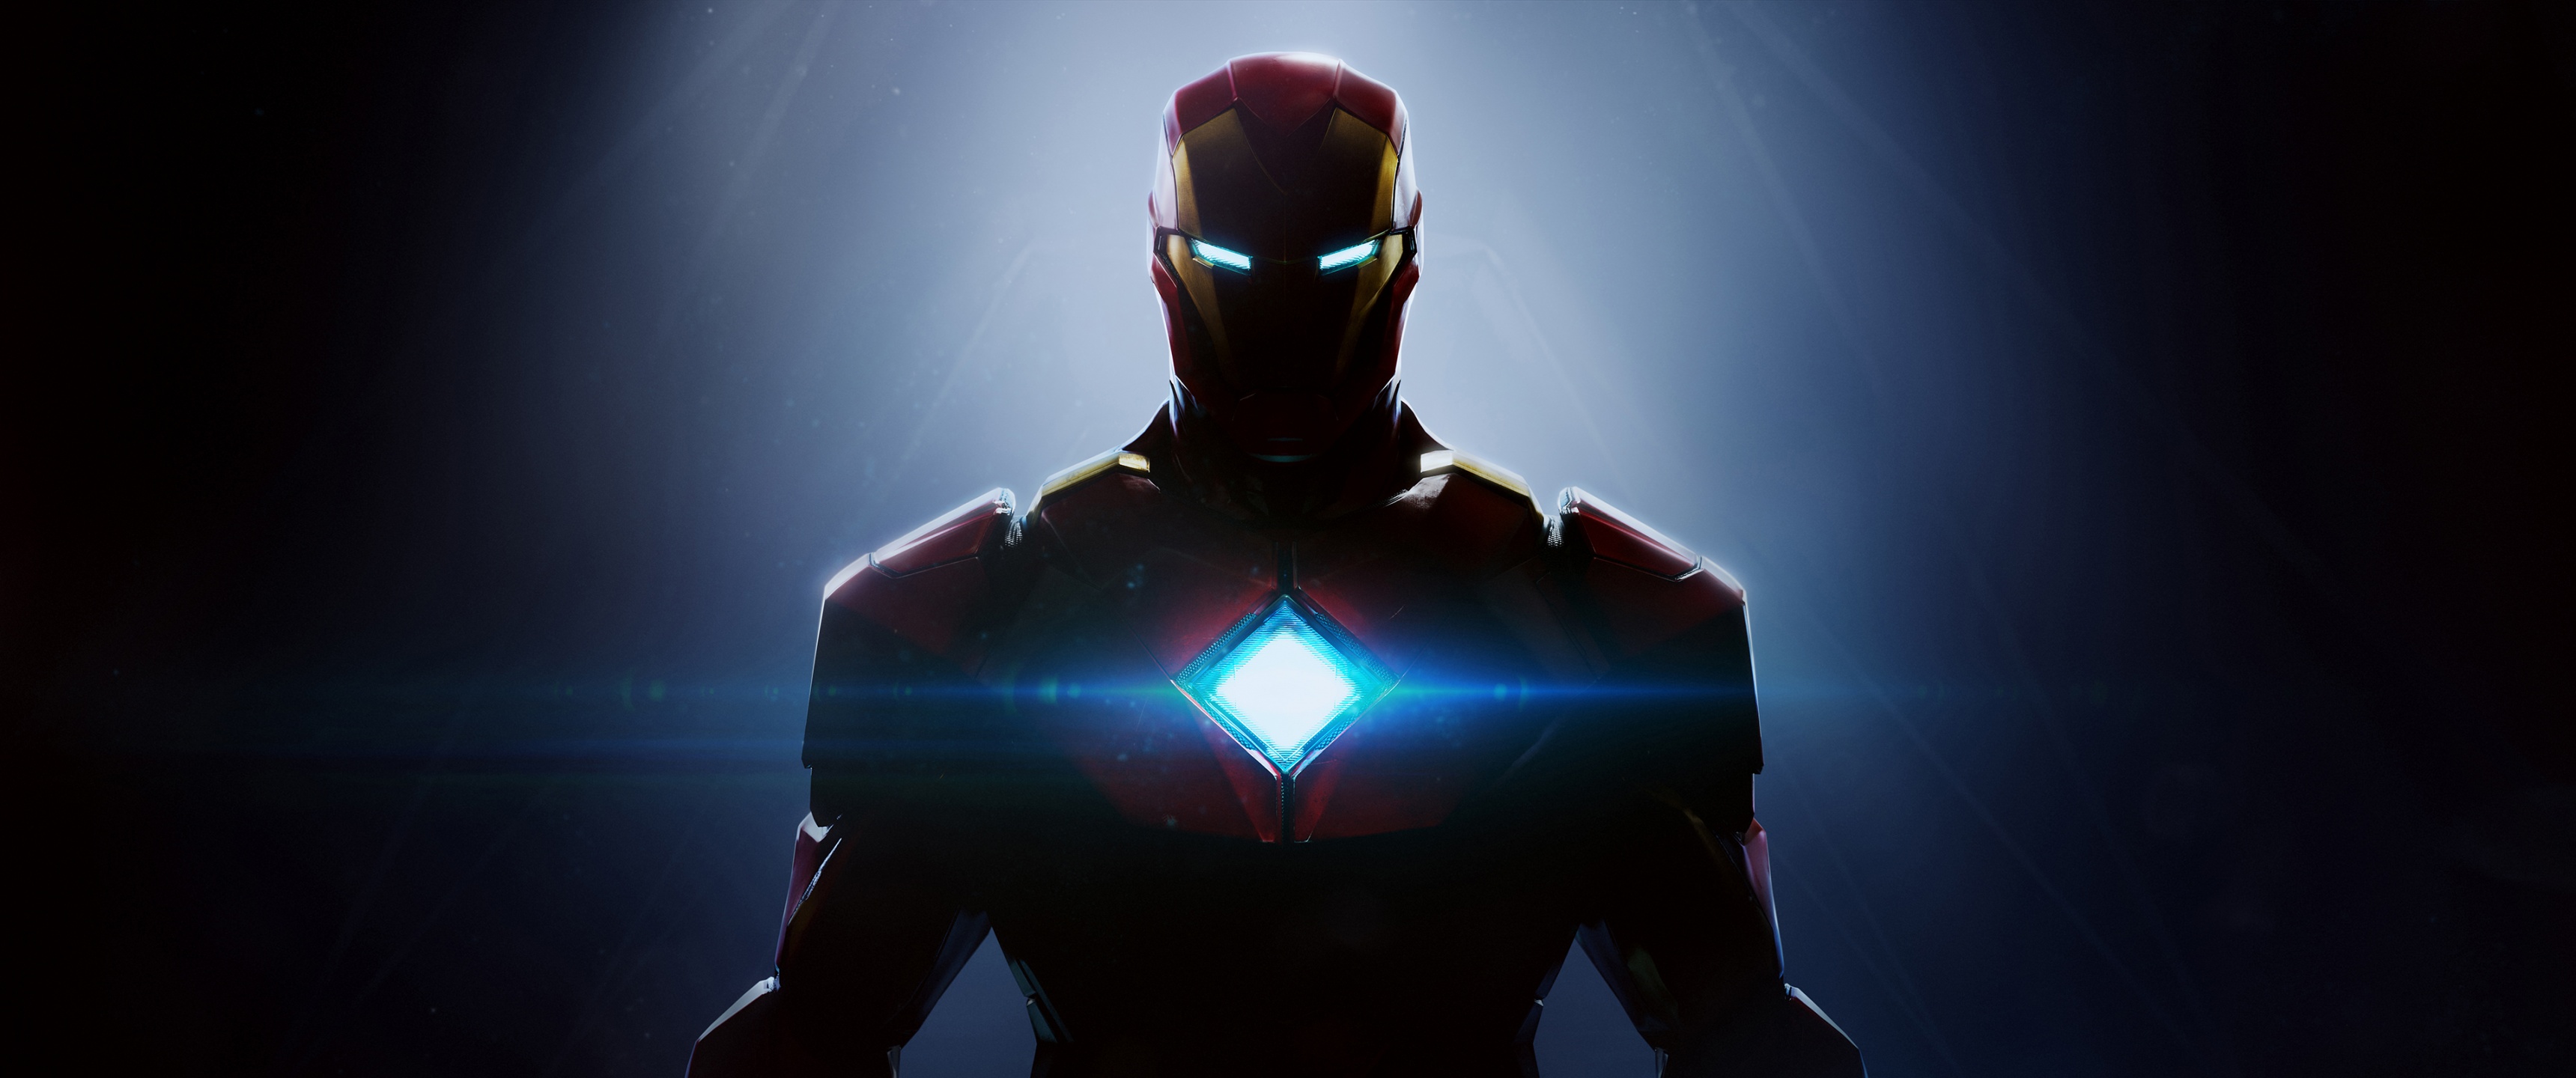 Hình nền Iron Man 4K của Marvel là sự kết hợp hoàn hảo giữa Iron Man và thương hiệu Marvel. Hình ảnh sắc nét, màu sắc rực rỡ, cùng với hiệu ứng ấn tượng sẽ khiến bạn thật sự say đắm khi nhìn vào. Bạn sẽ không muốn bỏ qua hình nền này!